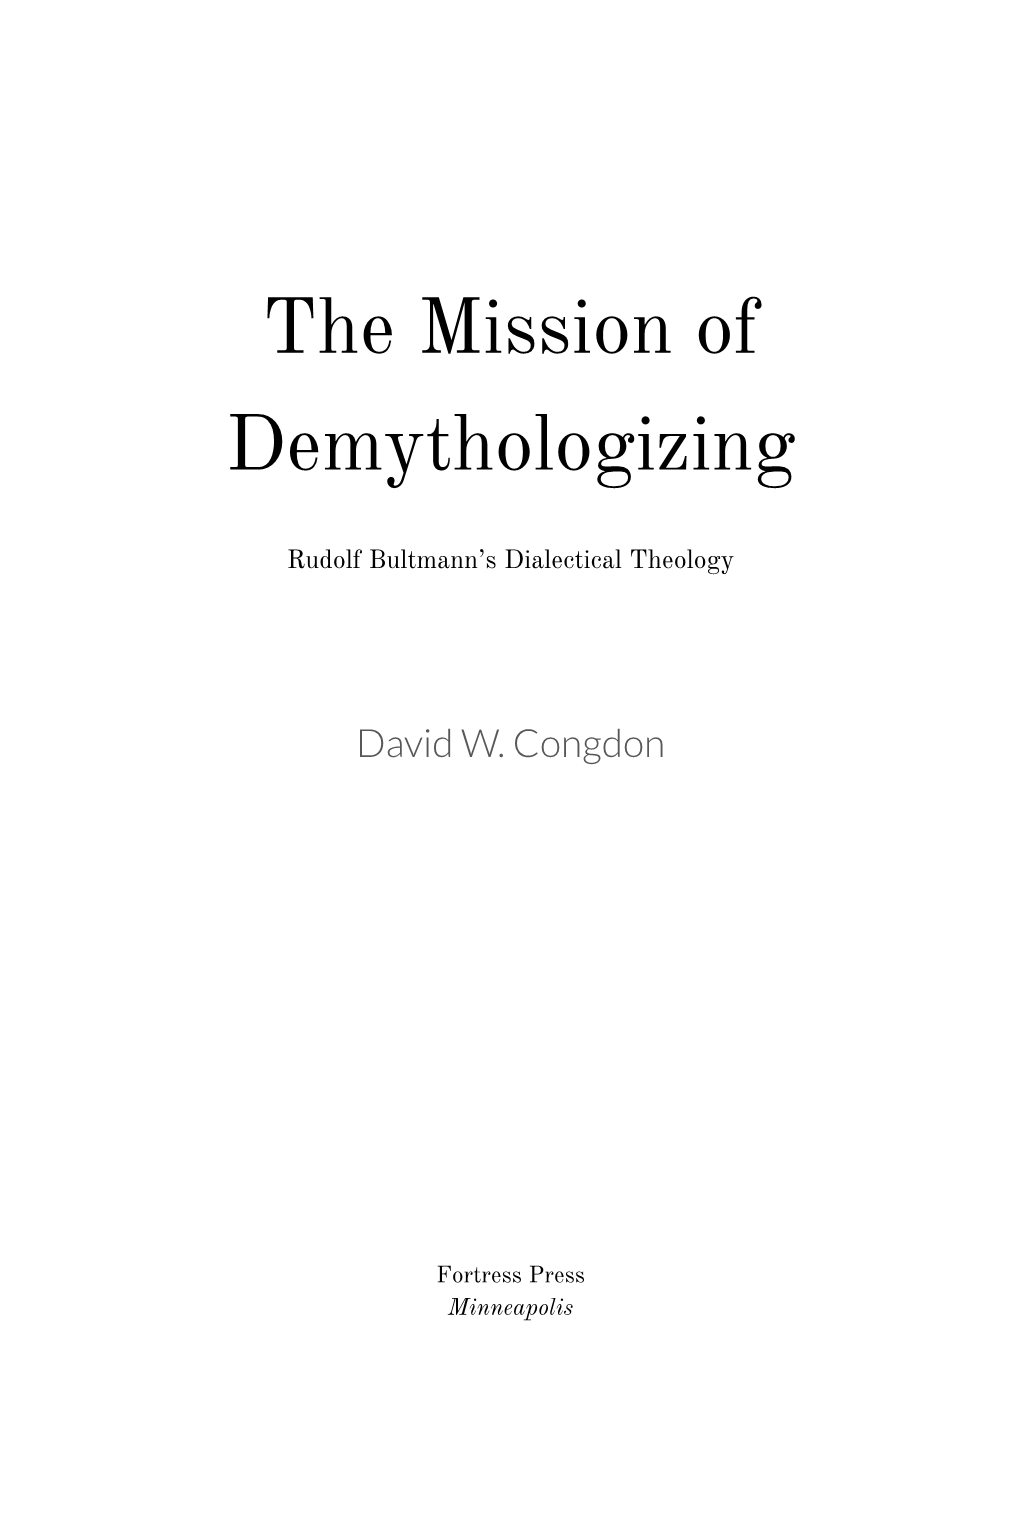 The Mission of Demythologizing